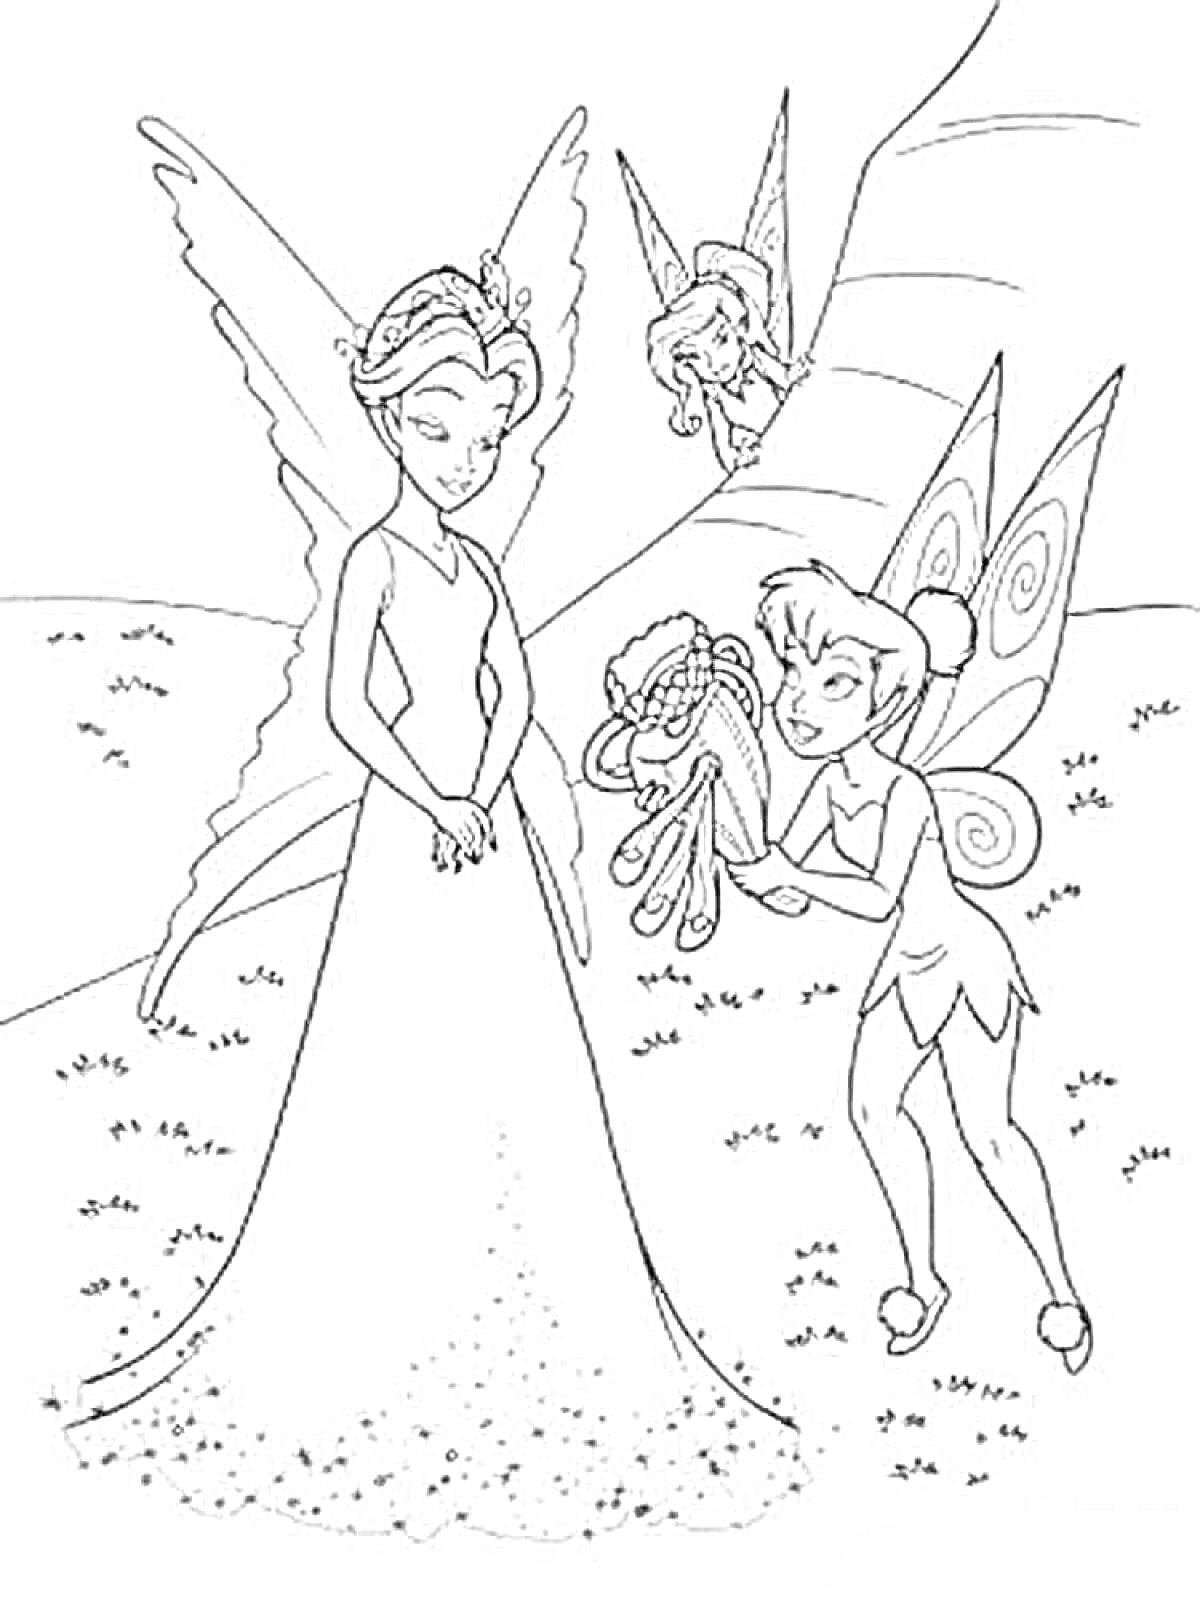 Три феи: фея с длинным платьем с блестками, фея с крыльями, держащая ленты, фея, выглядывающая из-за дерева